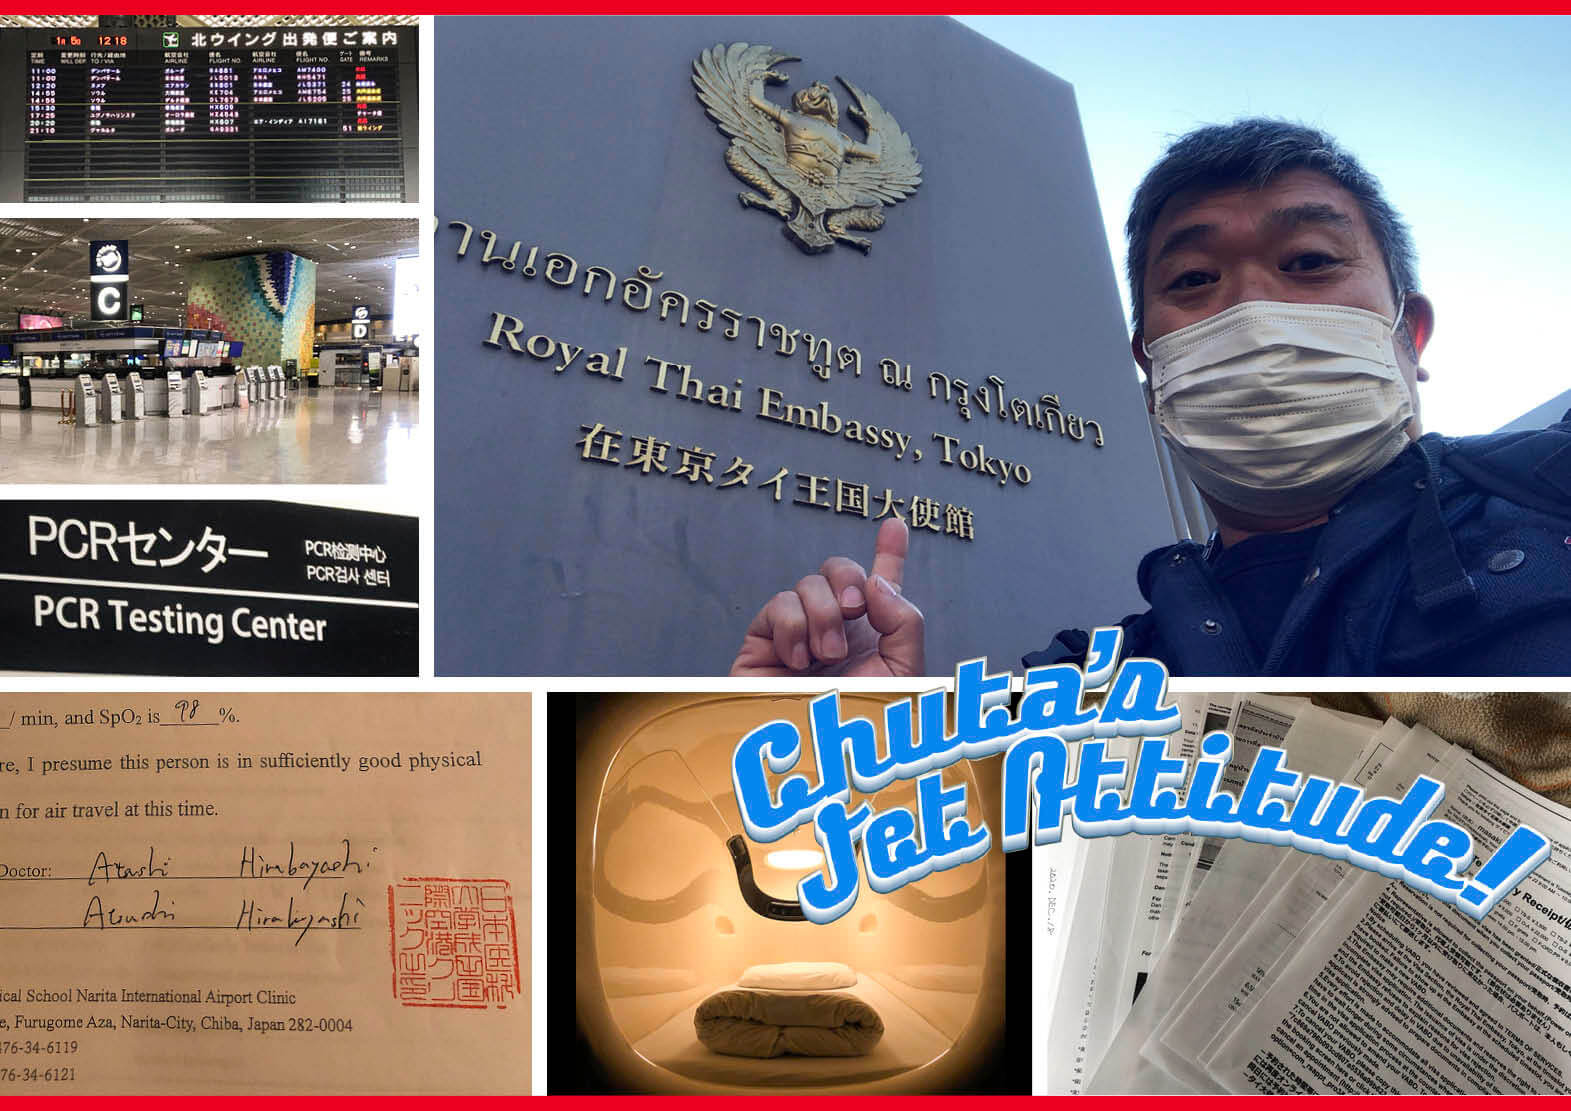 中田正樹コラム2021 　国内での出国準備編　日本を出国するまでにやることを全部見せます　前編・タイに入国するまで　「コロナ禍での海外レース」　Chuta's Jet Attitude　ジェットスキー（水上バイク）